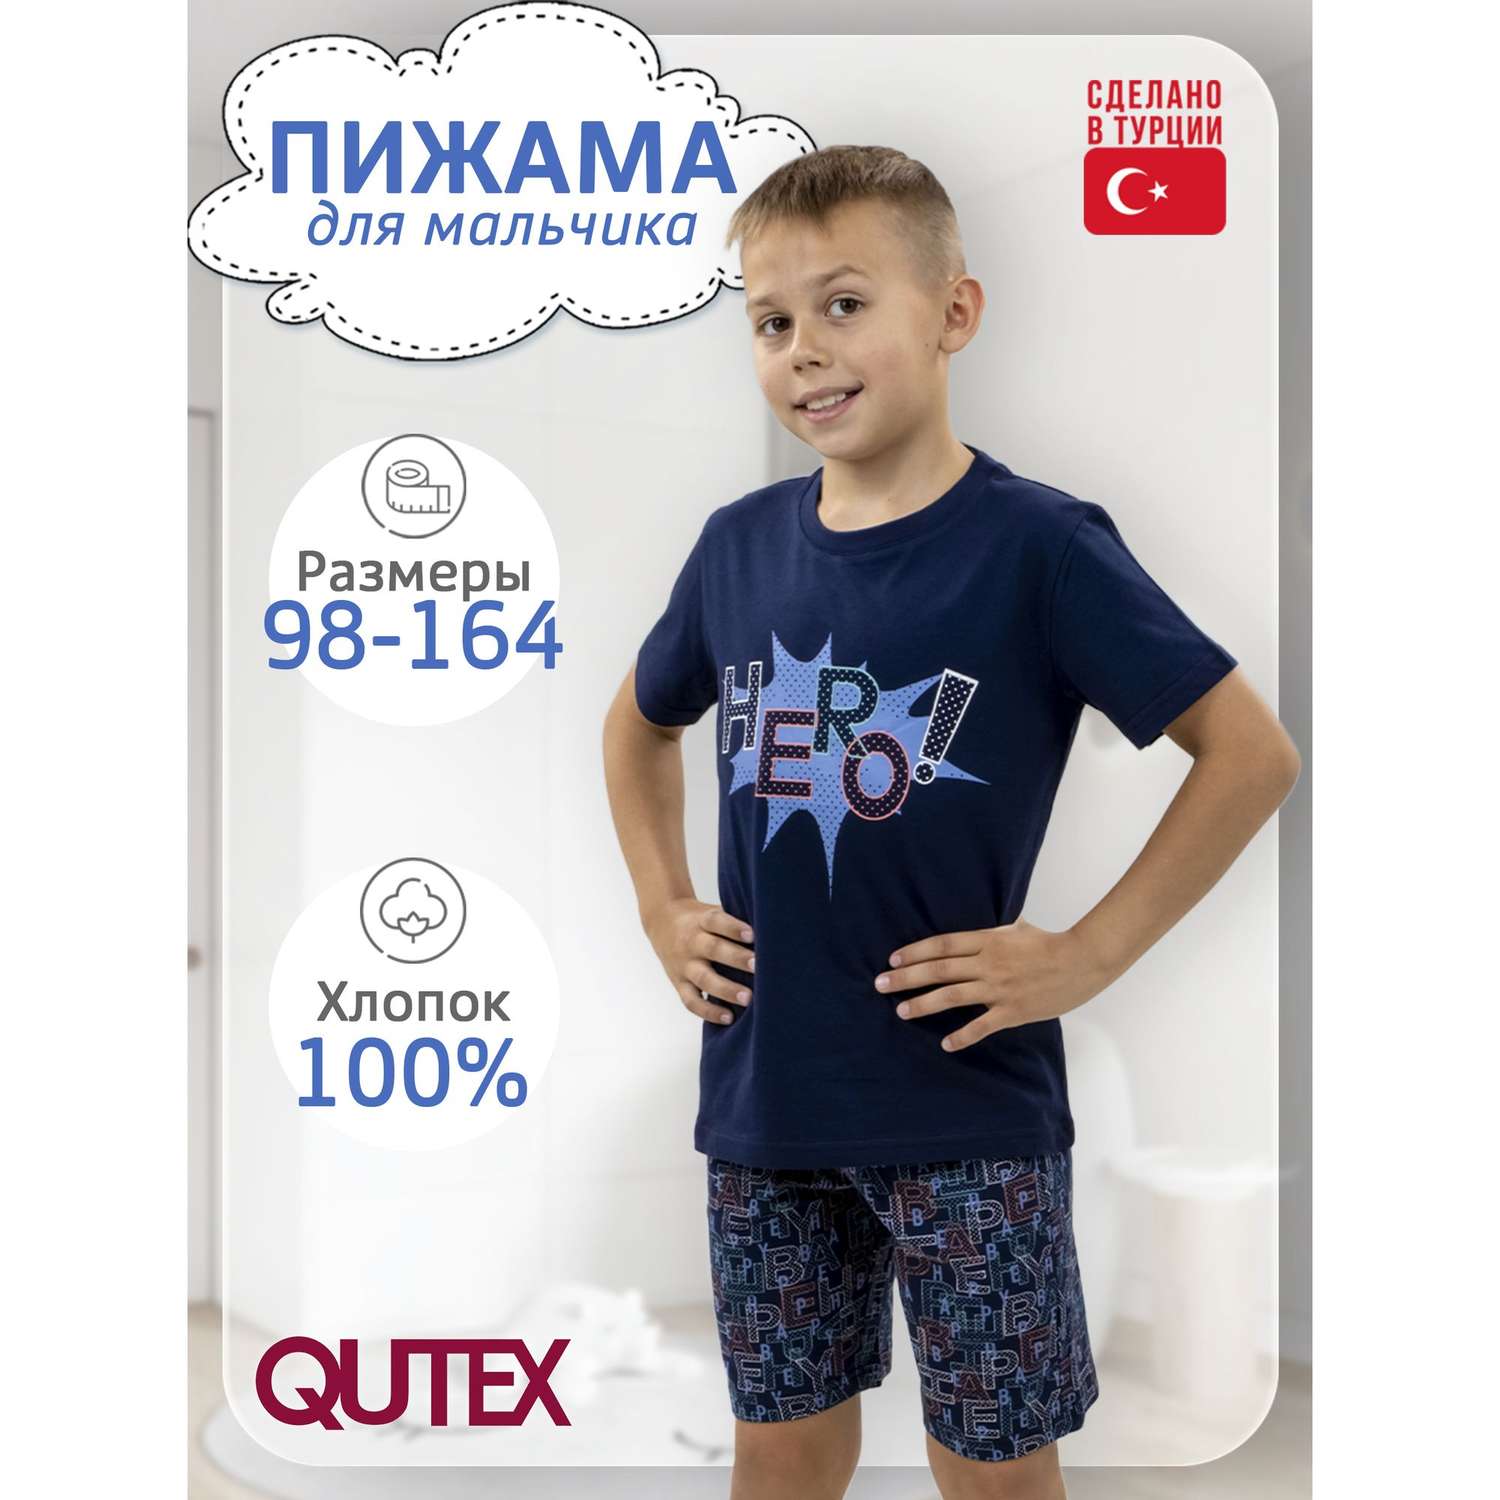 Пижама QUTEX 2401-003-1Q44 - фото 2